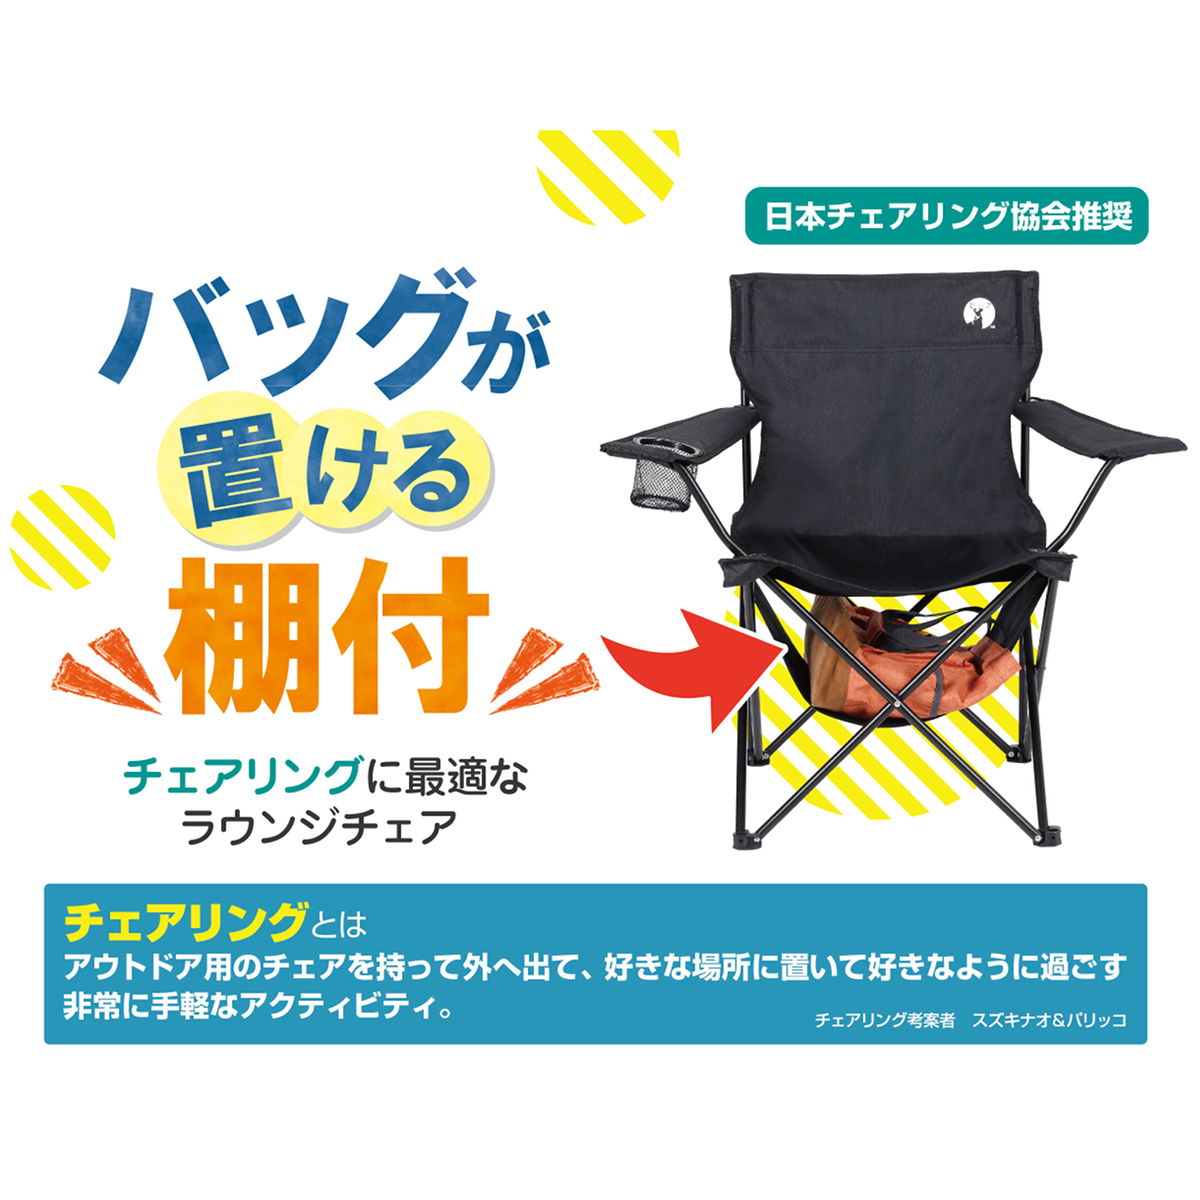 日本チェアリング協会推奨 - チェアリングに最適なラウンジチェア